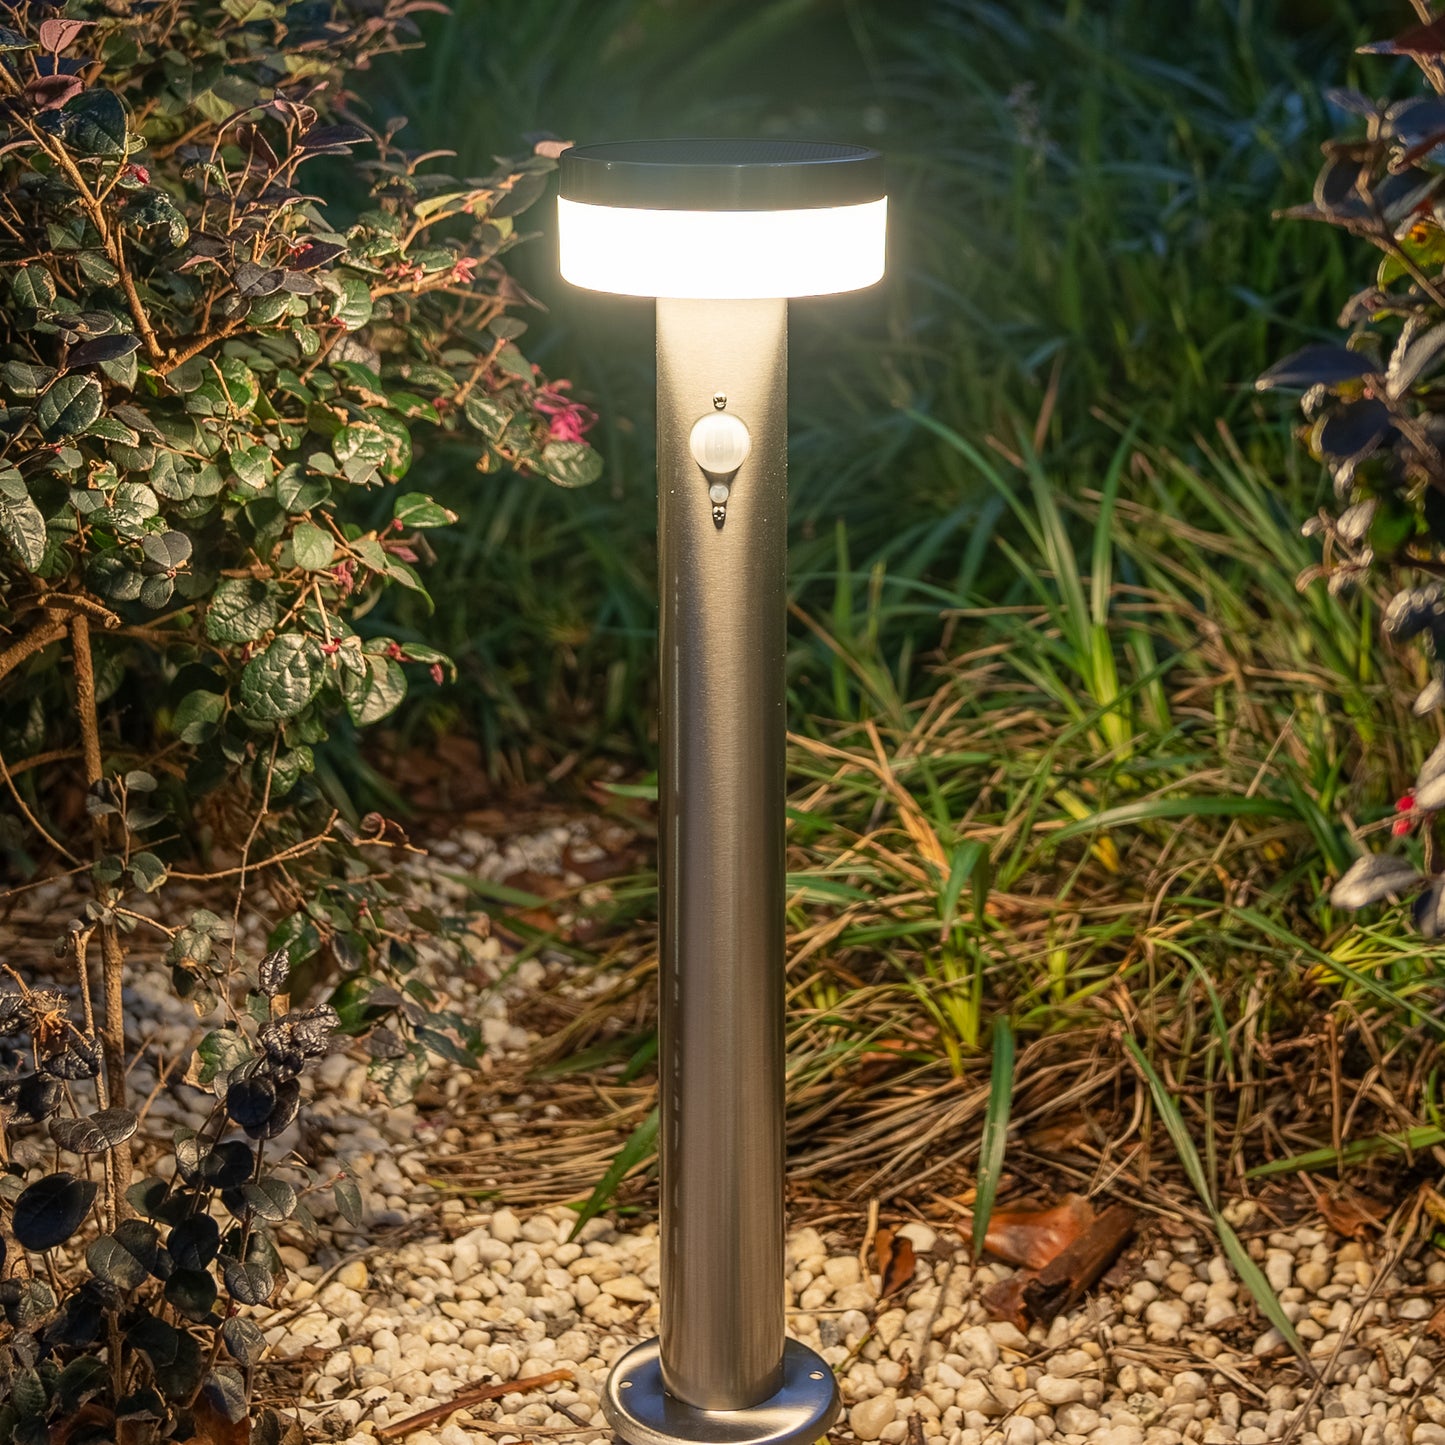 Stainless Steel Solar Bollard Light with Motion Sensor | 12 LED